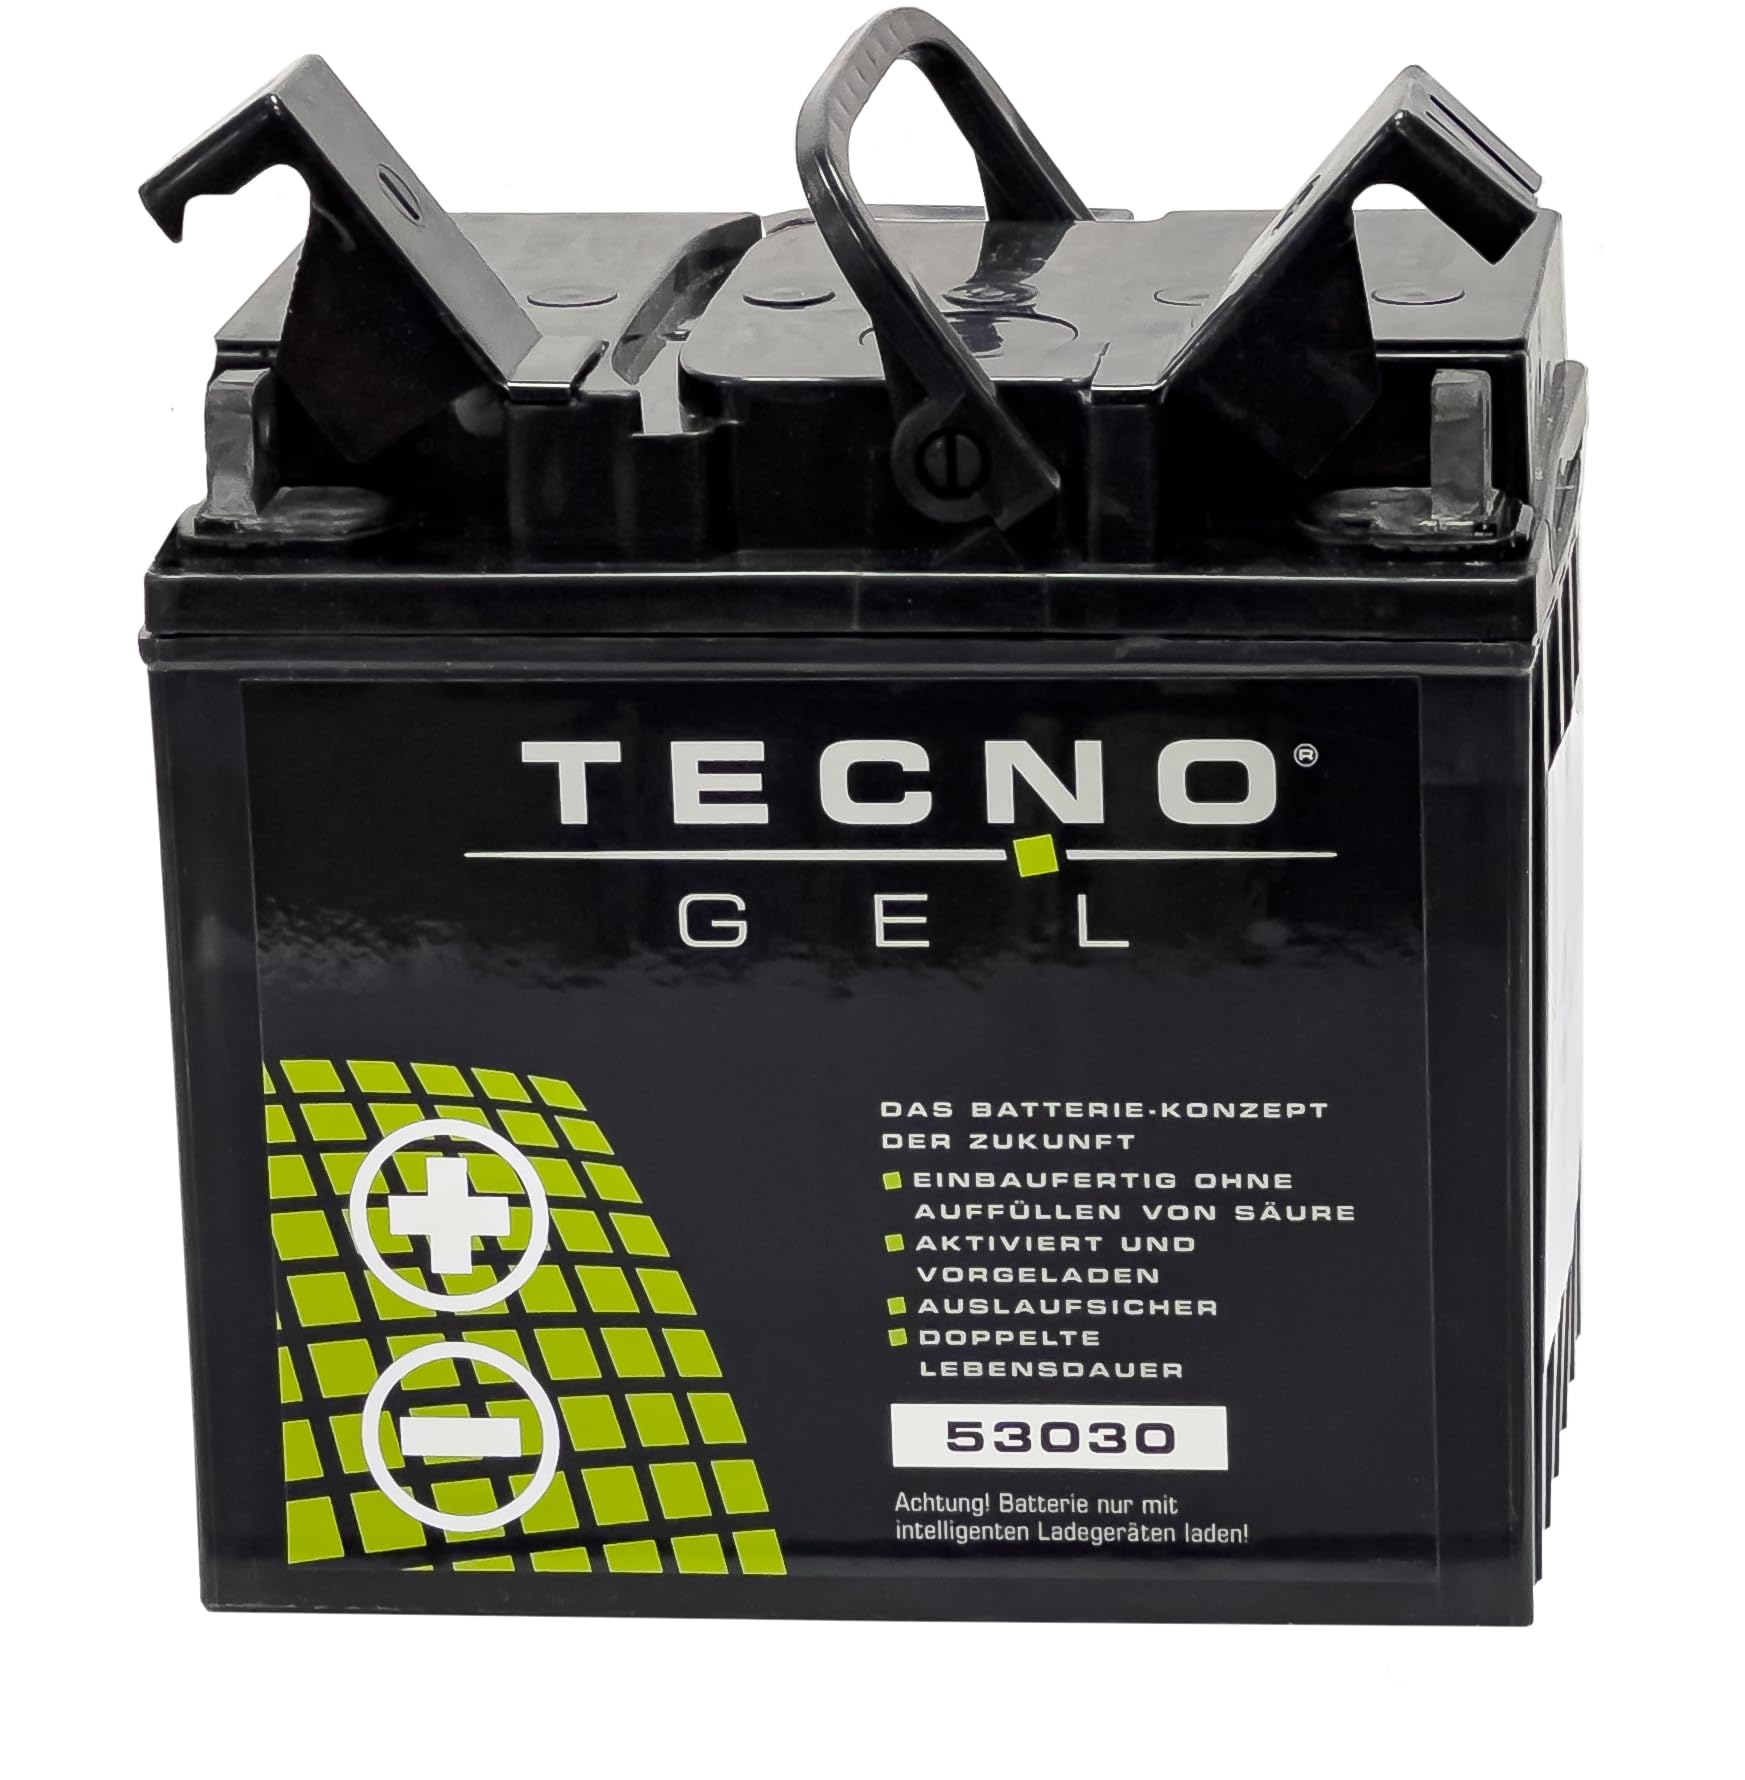 TECNO-GEL Motorrad Qualitäts Batterie 53030 für BMW R 80, G/S, GS, GS PD, GS/2, R, RT, RT/2, ST Mono- u. Paralever 1980-1998 12V Gel-Batterie 30 Ah, 187x130x170 mm von Wirth-Federn